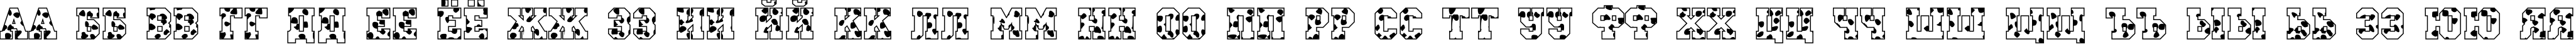 Пример написания русского алфавита шрифтом a_CampusSpots